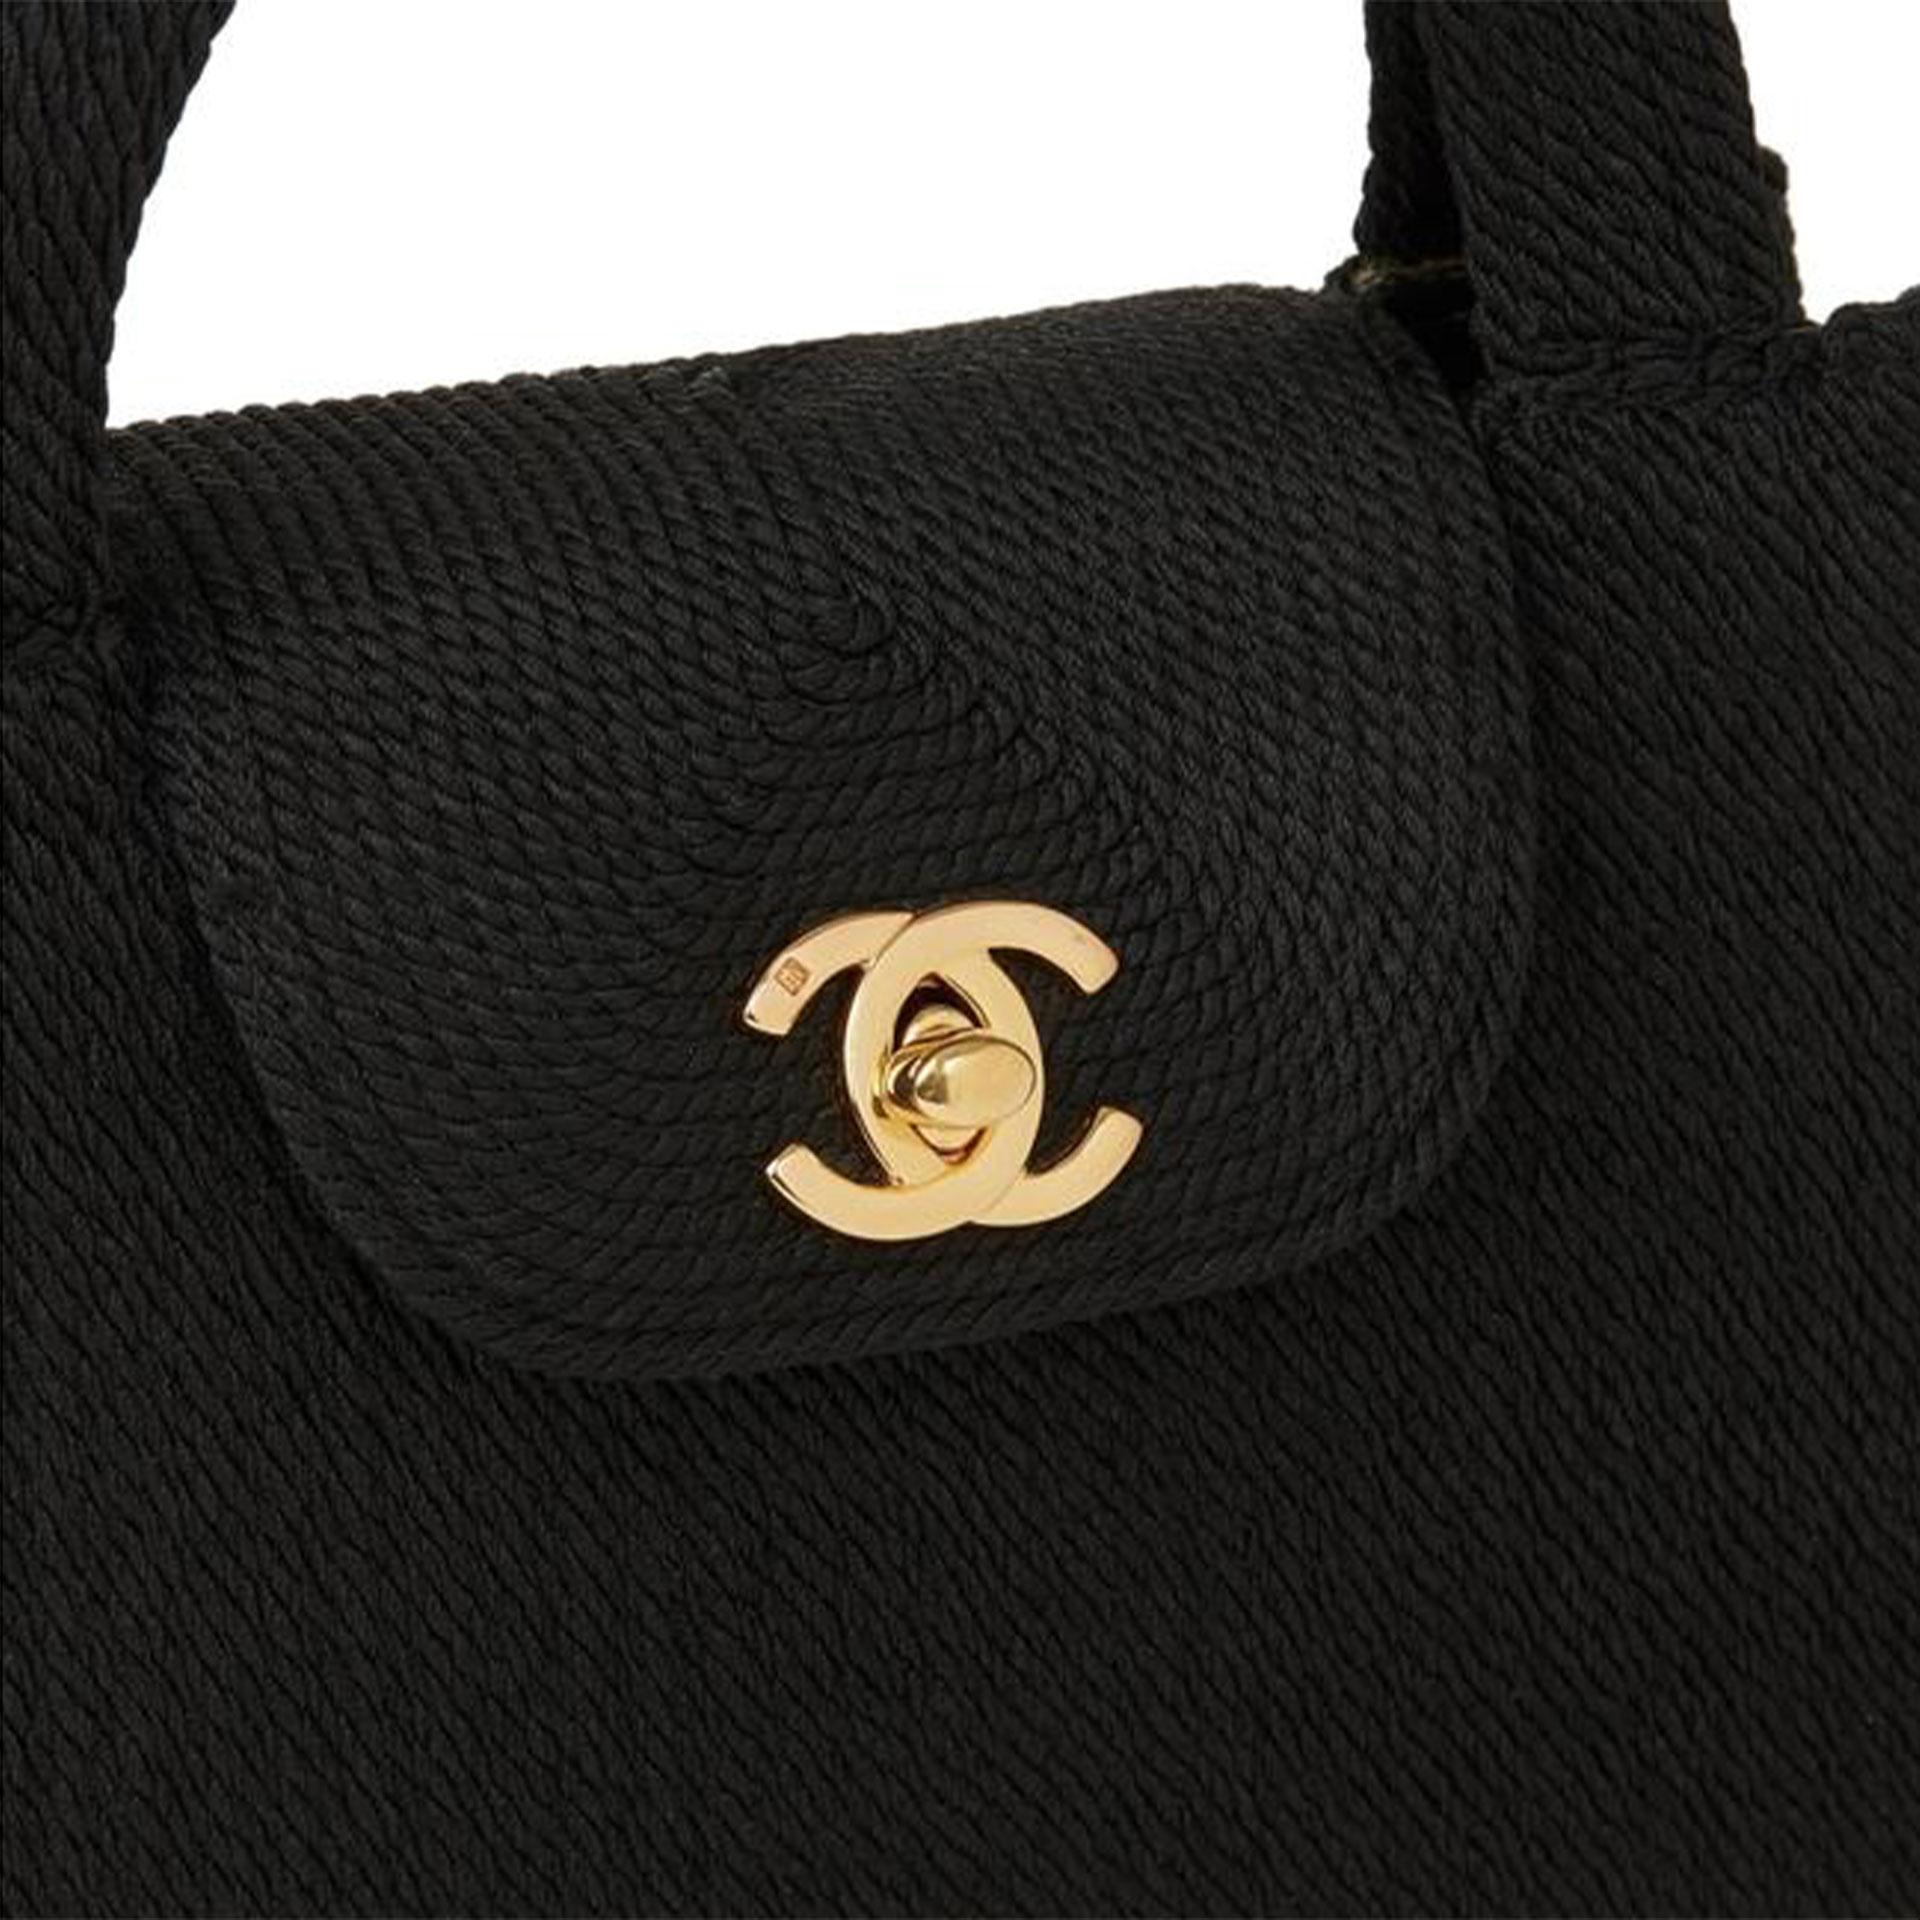 Women's or Men's Chanel 1997 Kelly Classic Flap Top Handle Rare Vintage Black Canvas Satchel Bag For Sale